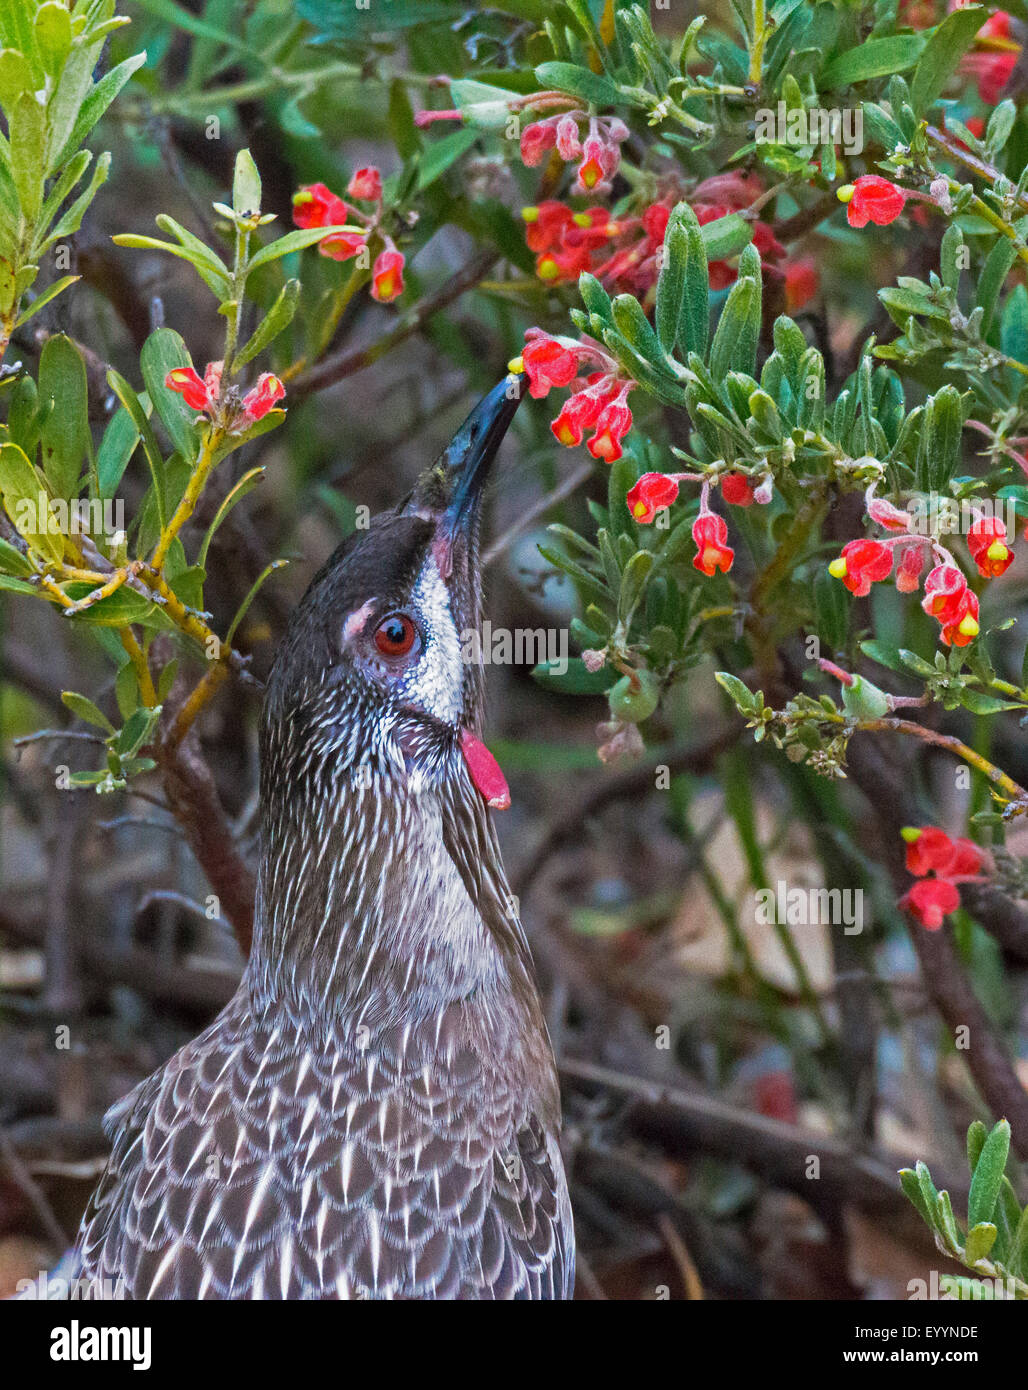 Oiseau rouge Anthochaera carunculata (acacia), sur l'alimentation, de l'Australie, l'Australie Occidentale Banque D'Images